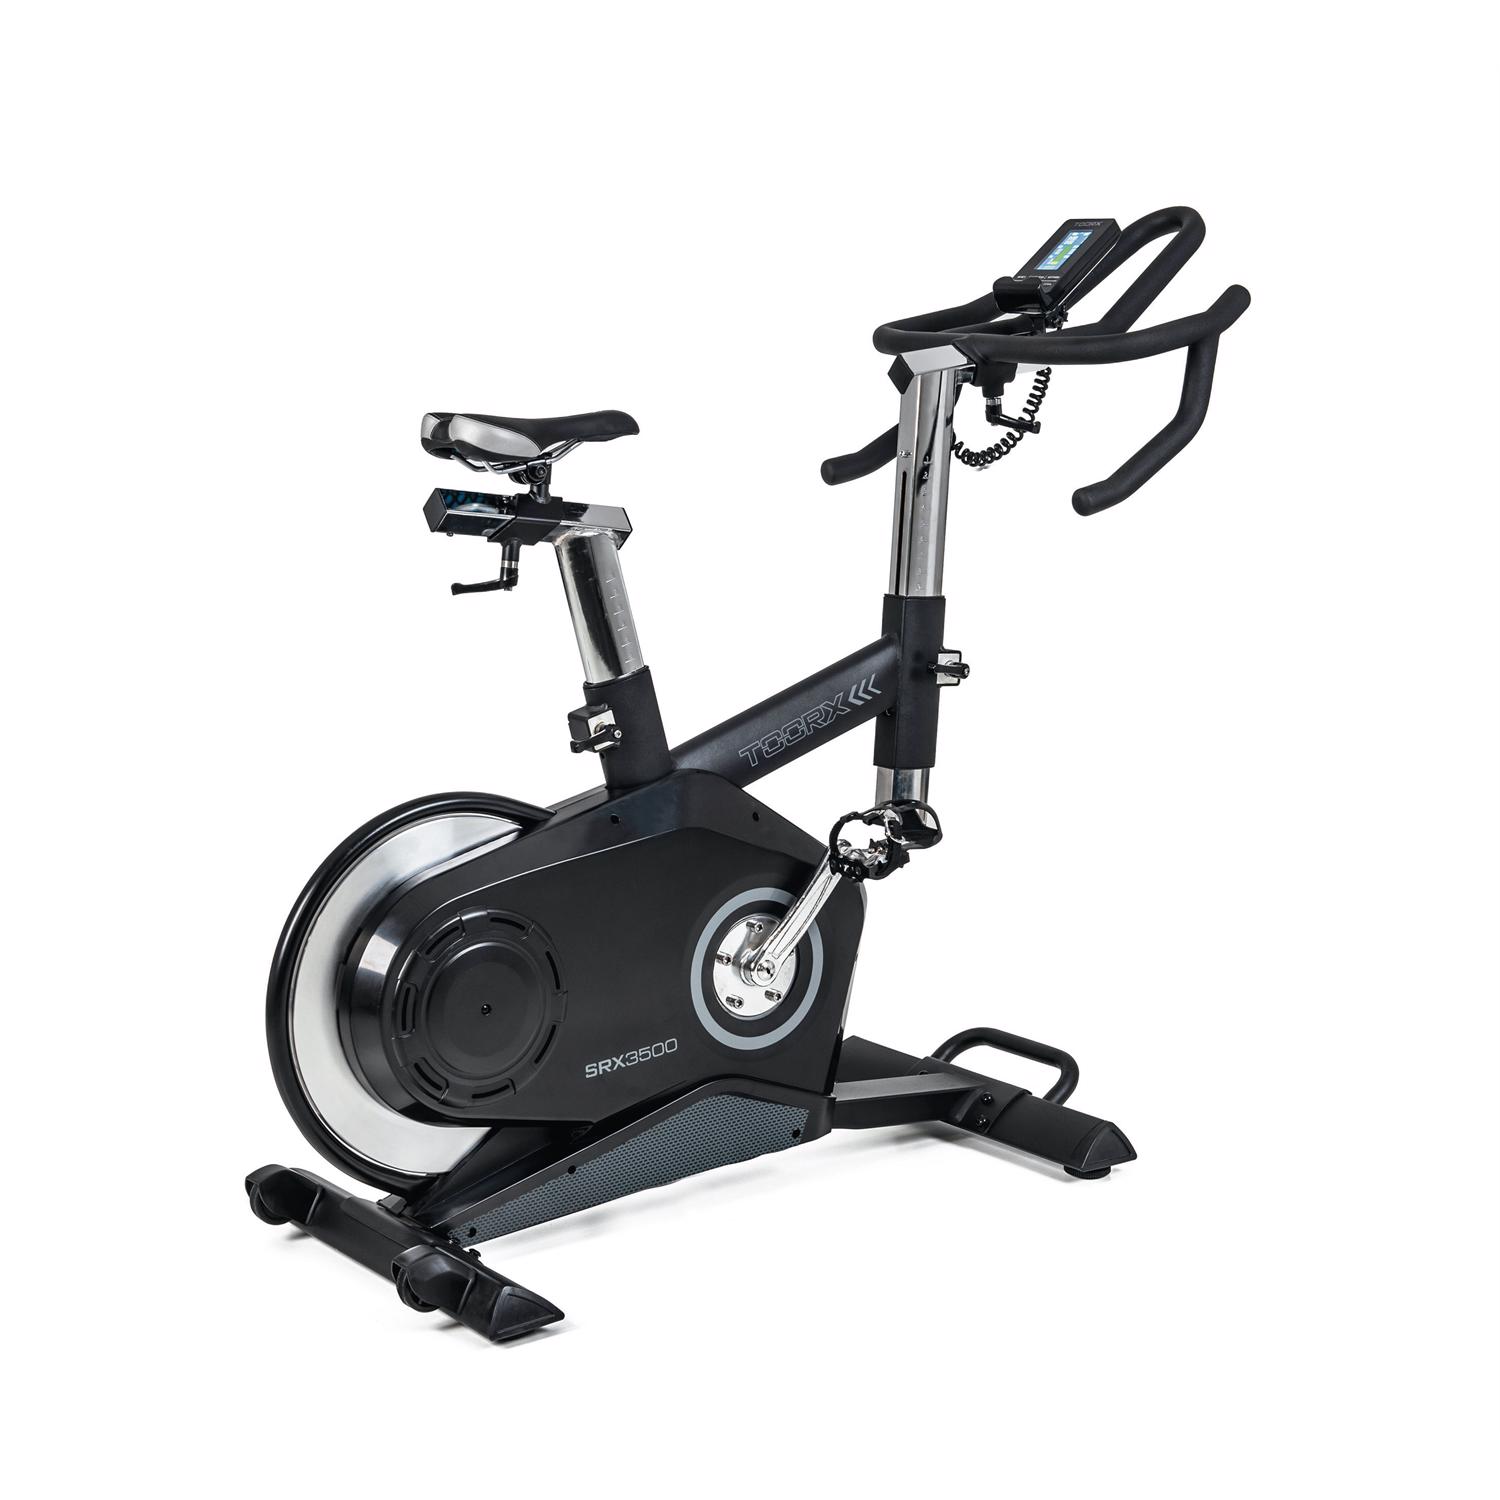 Dette er en TOORX SRX 3500 Indoor Bike, spinningscyklen er sort med lysegrå accenter og tekst